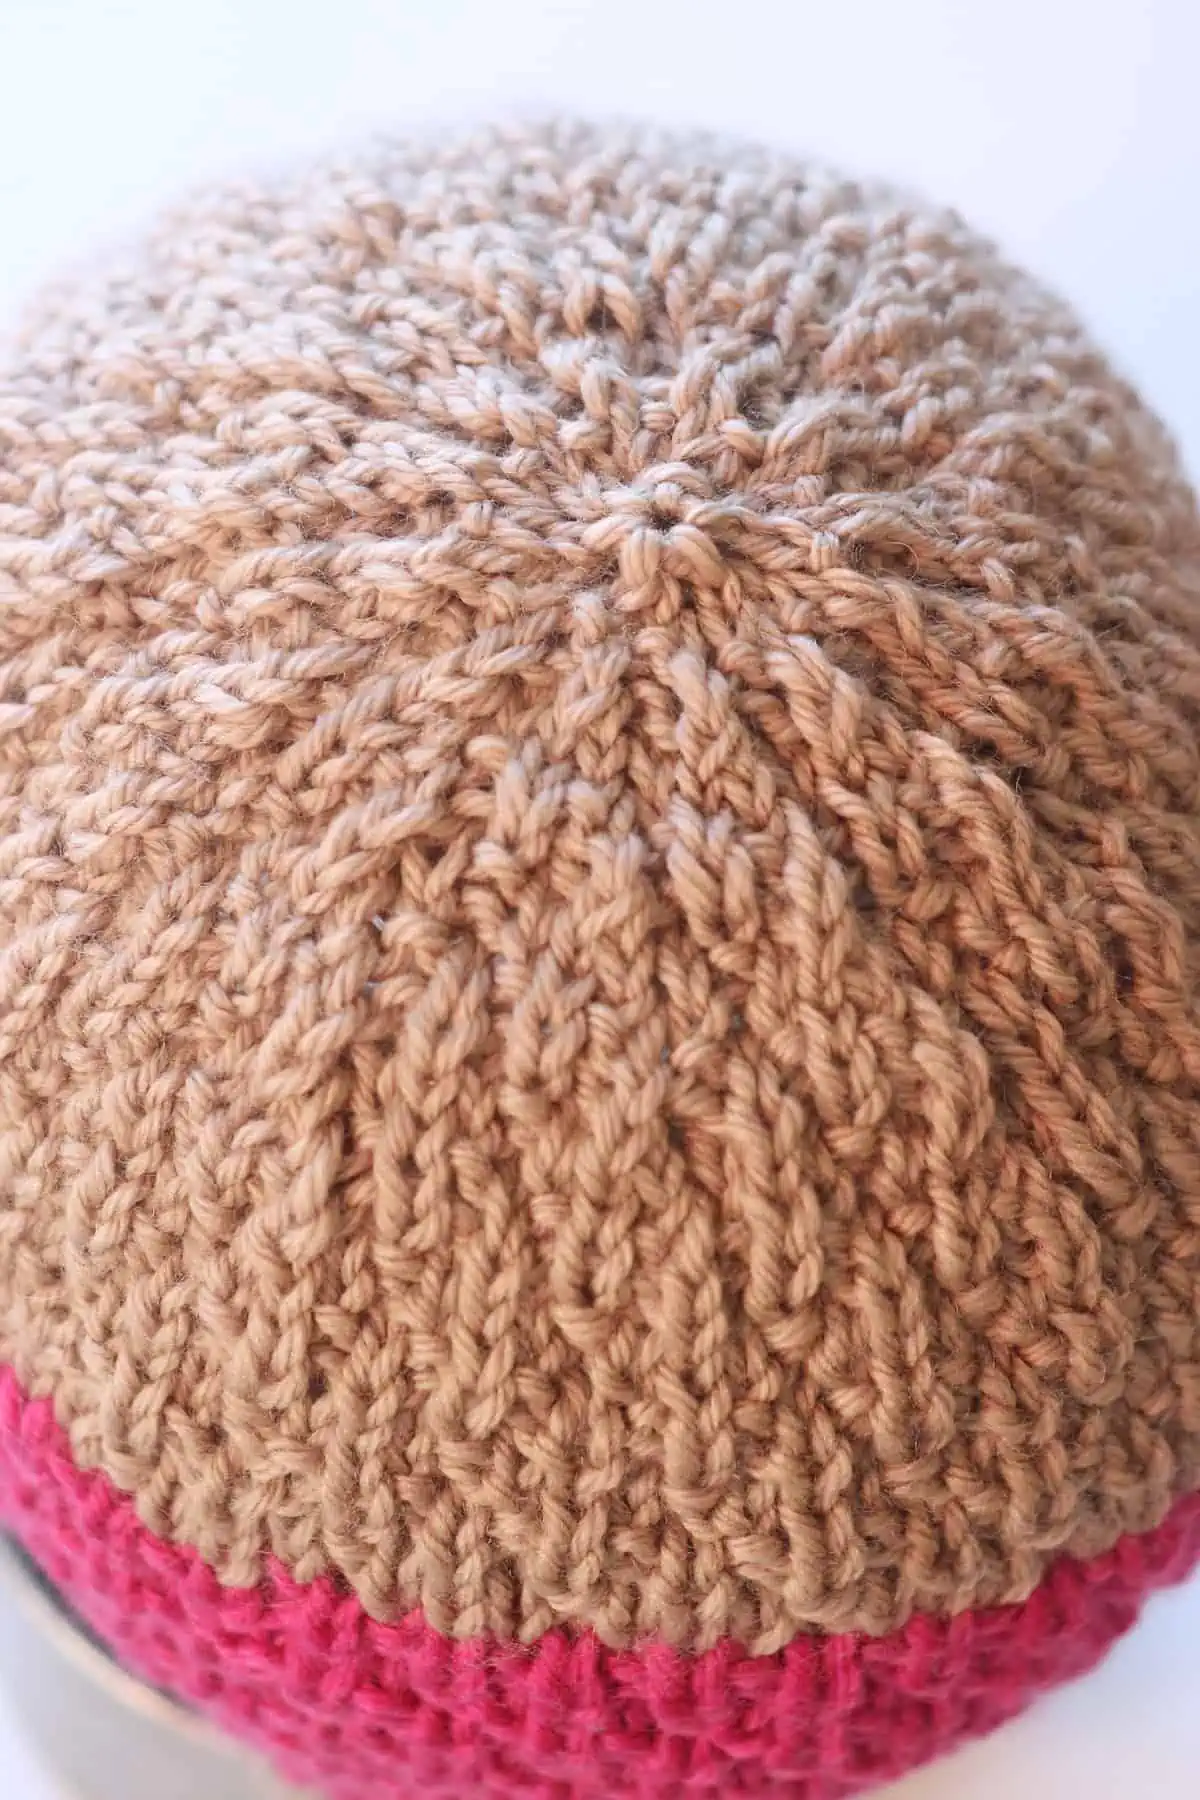 Crown decrease of the Seersucker Hat in light brown colored yarn.